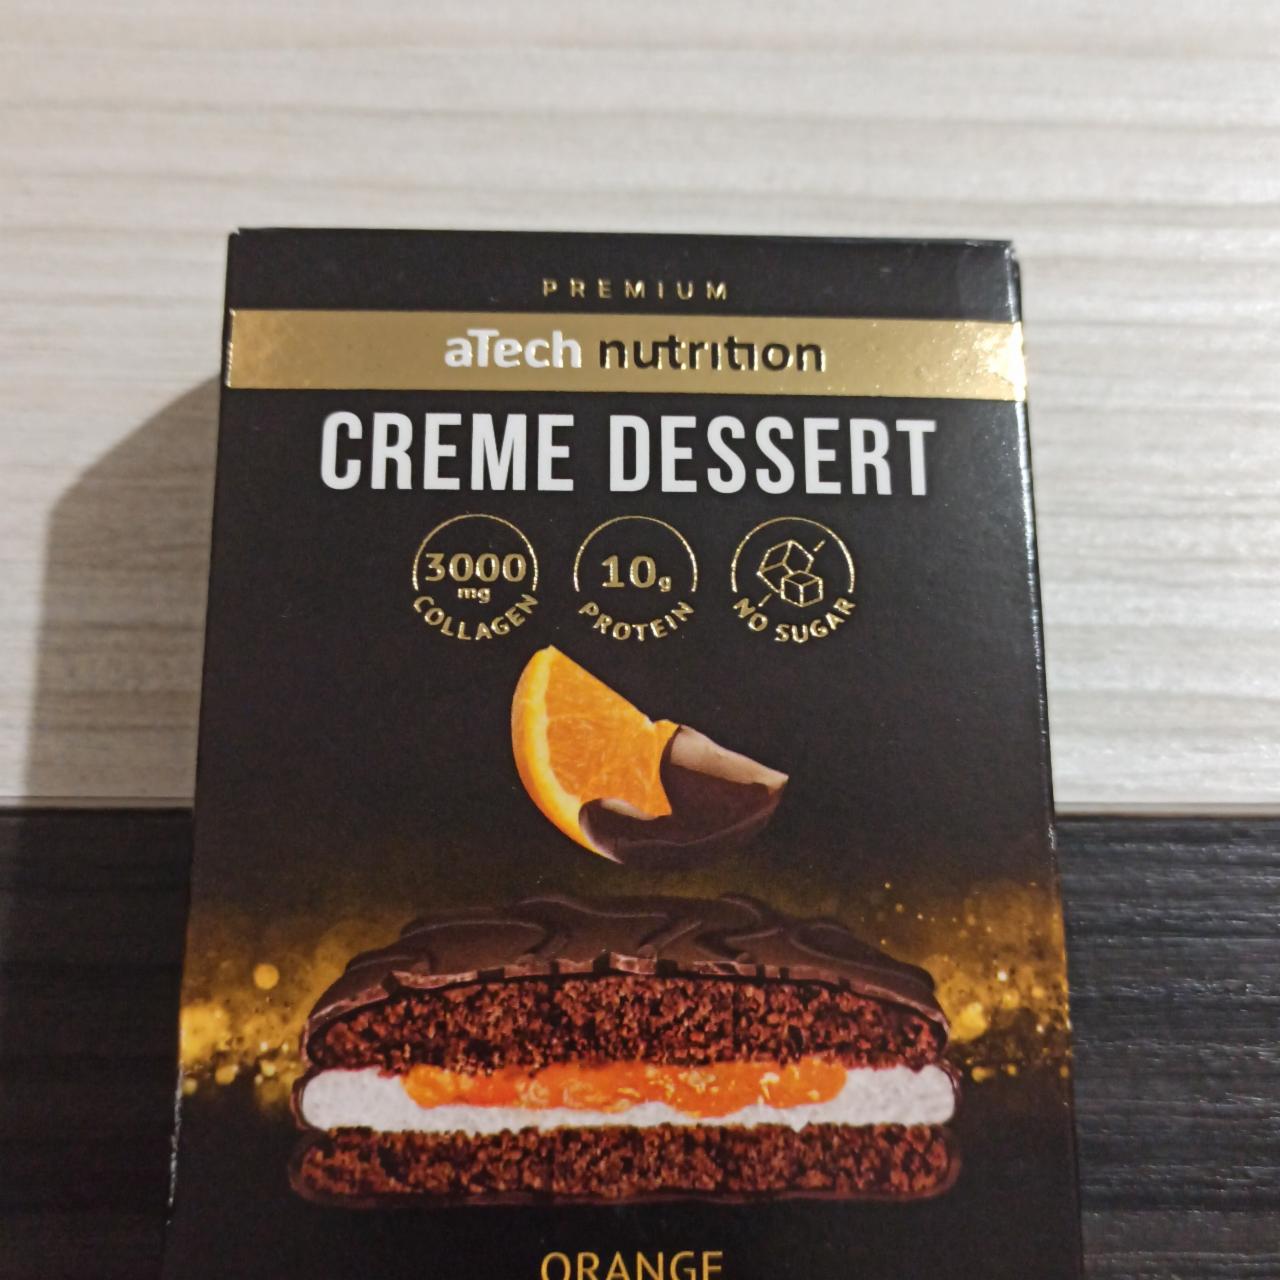 Фото - Печенье крем десерт с апельсином Creme Dessert orange aTech nutrition